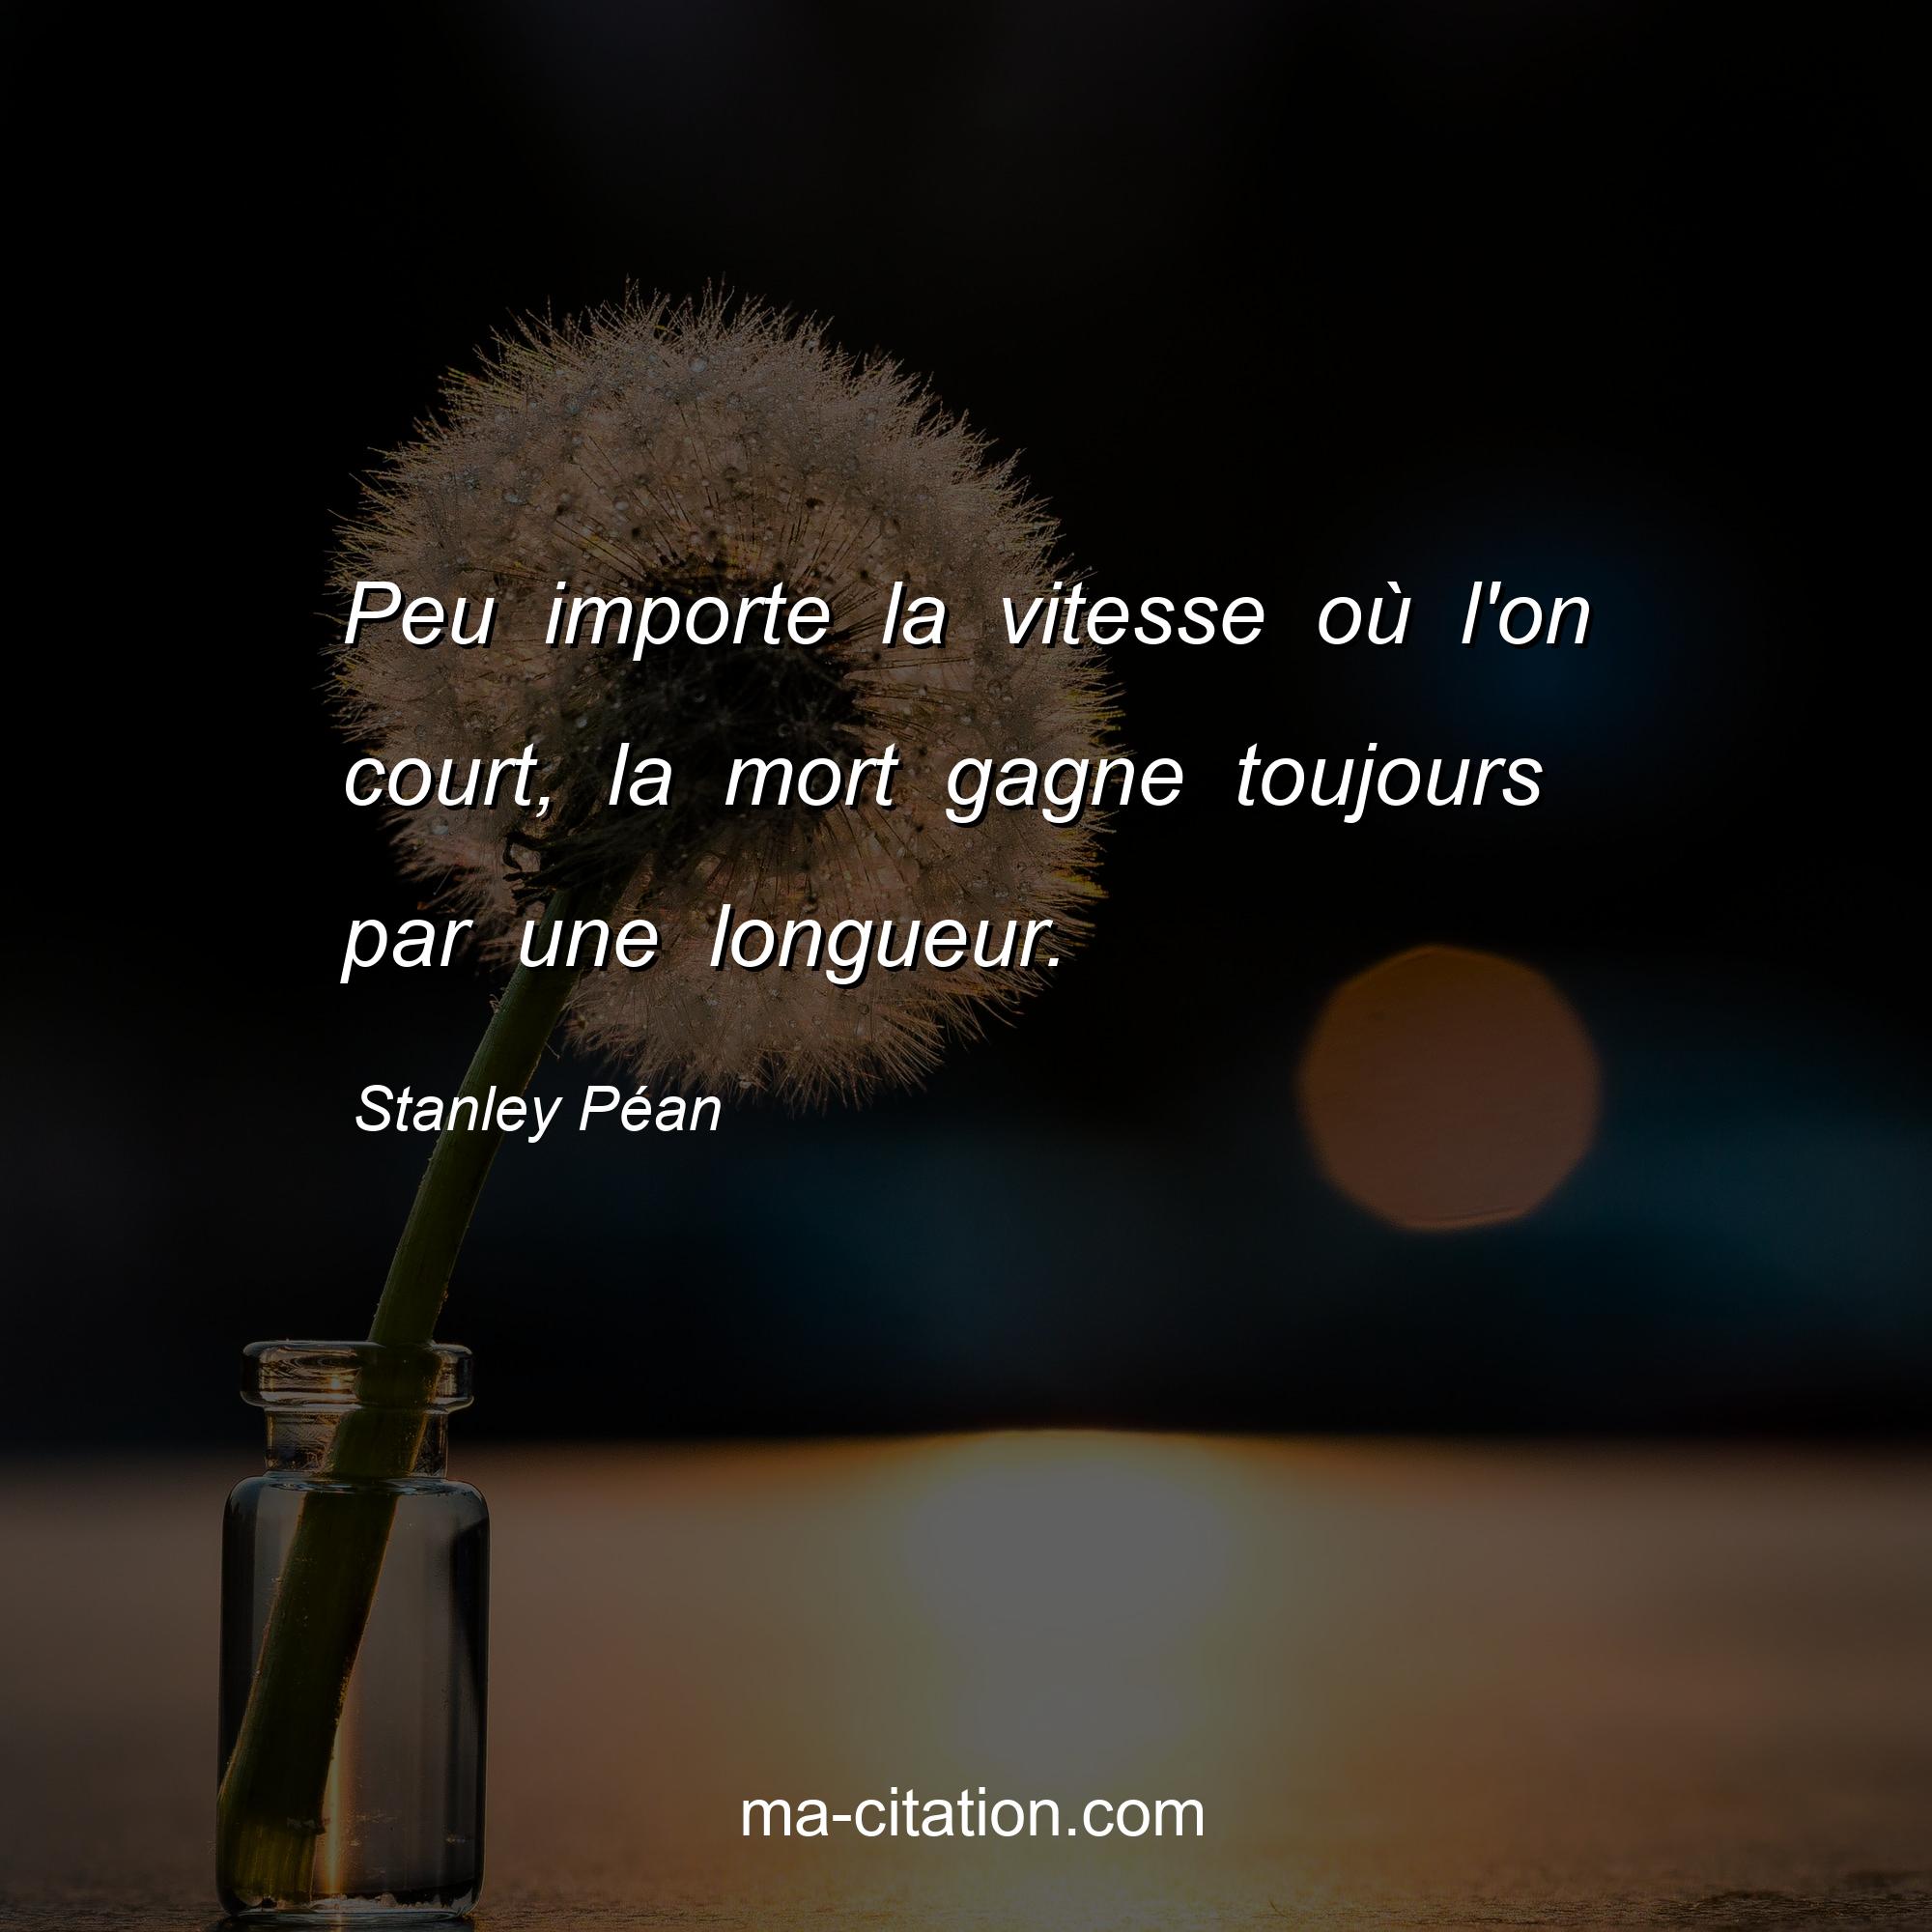 Stanley Péan : Peu importe la vitesse où l'on court, la mort gagne toujours par une longueur.